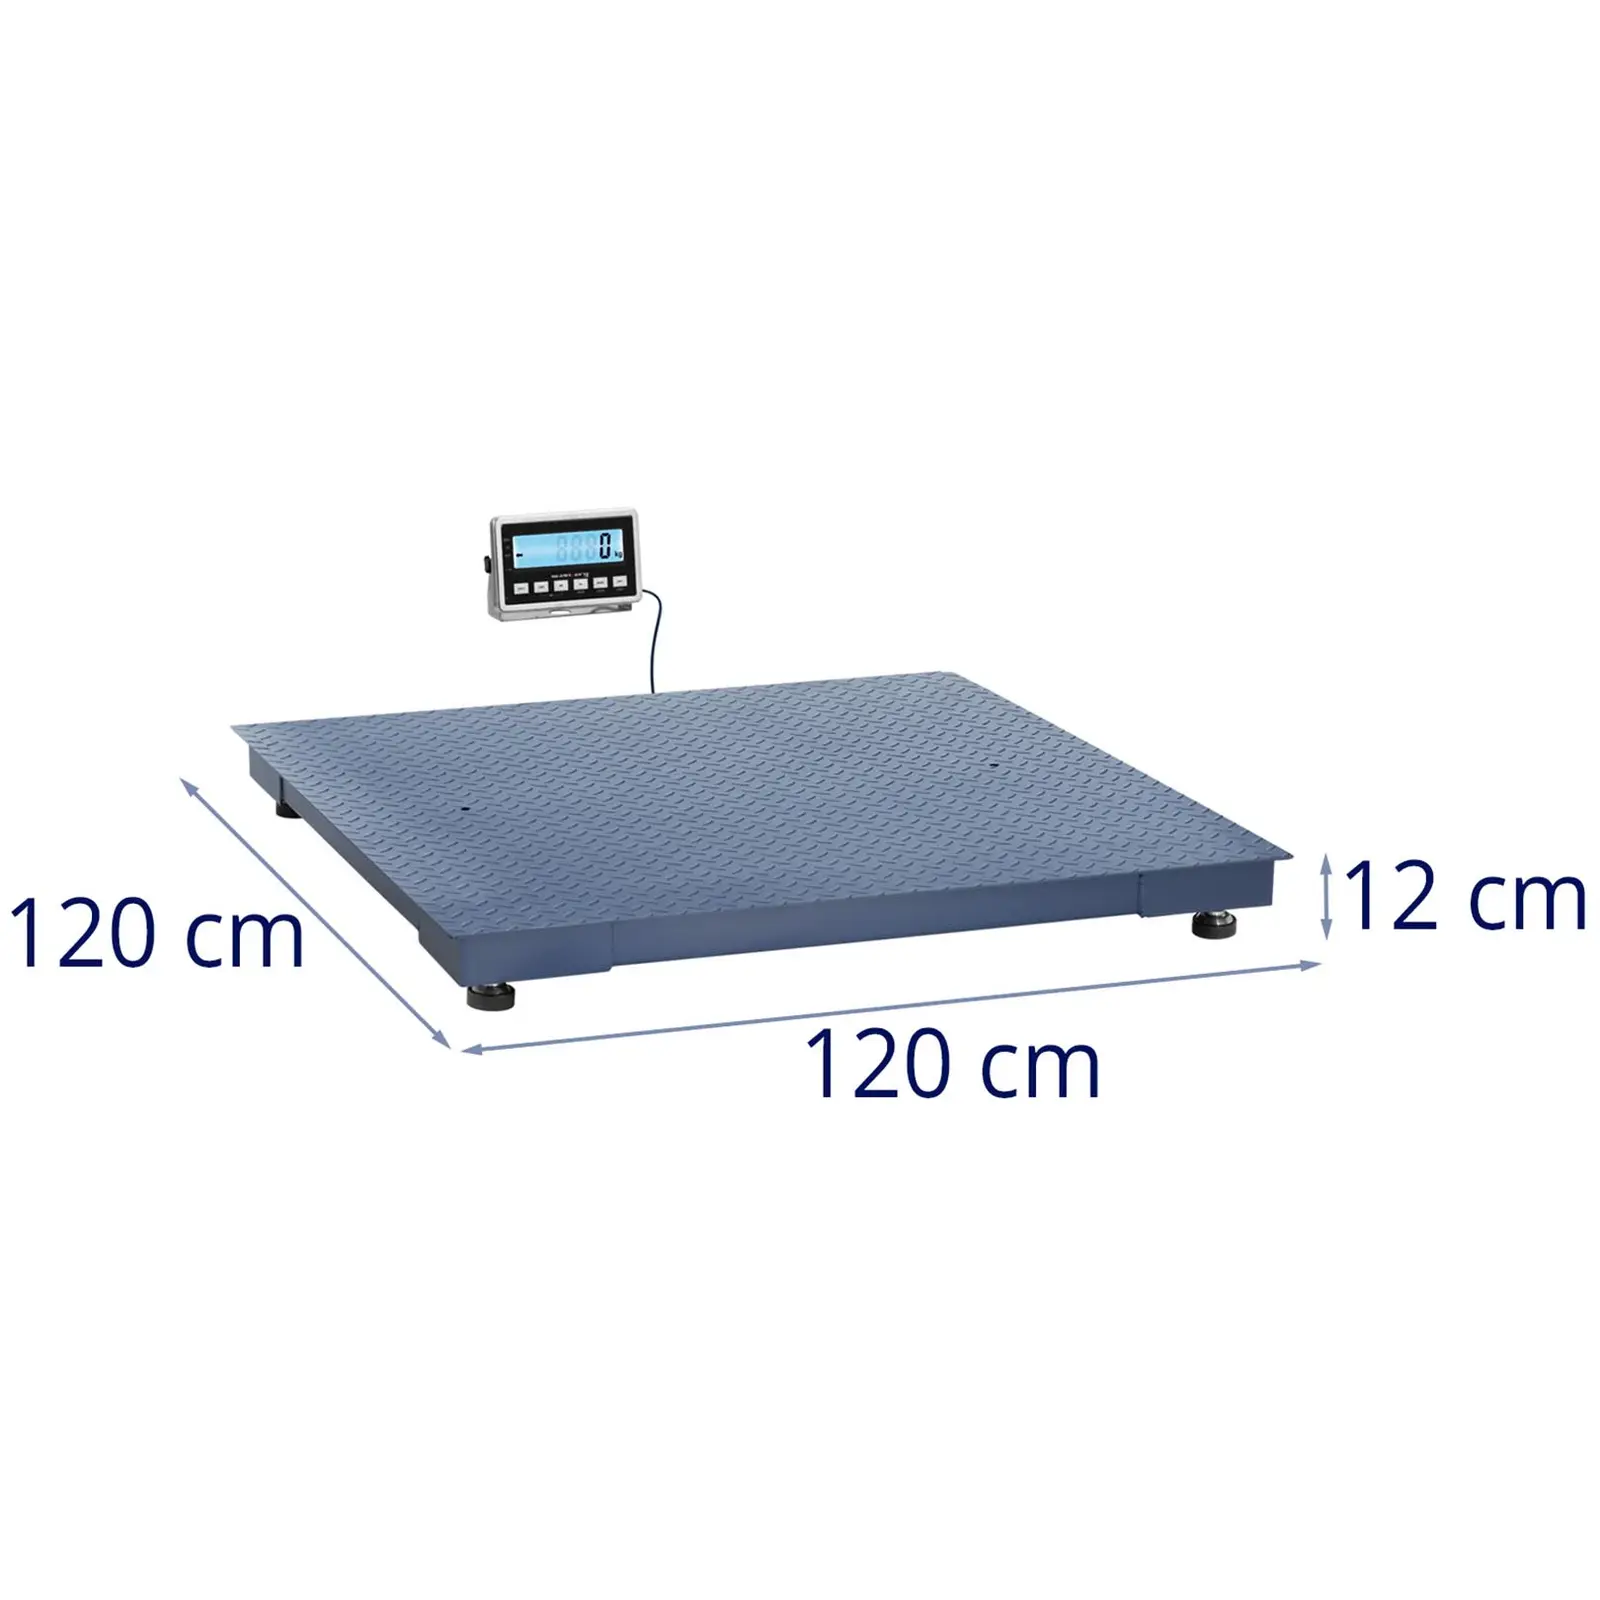 Báscula de suelo - 1000 kg / 0,2 kg - 1200 x 1200 mm - LCD